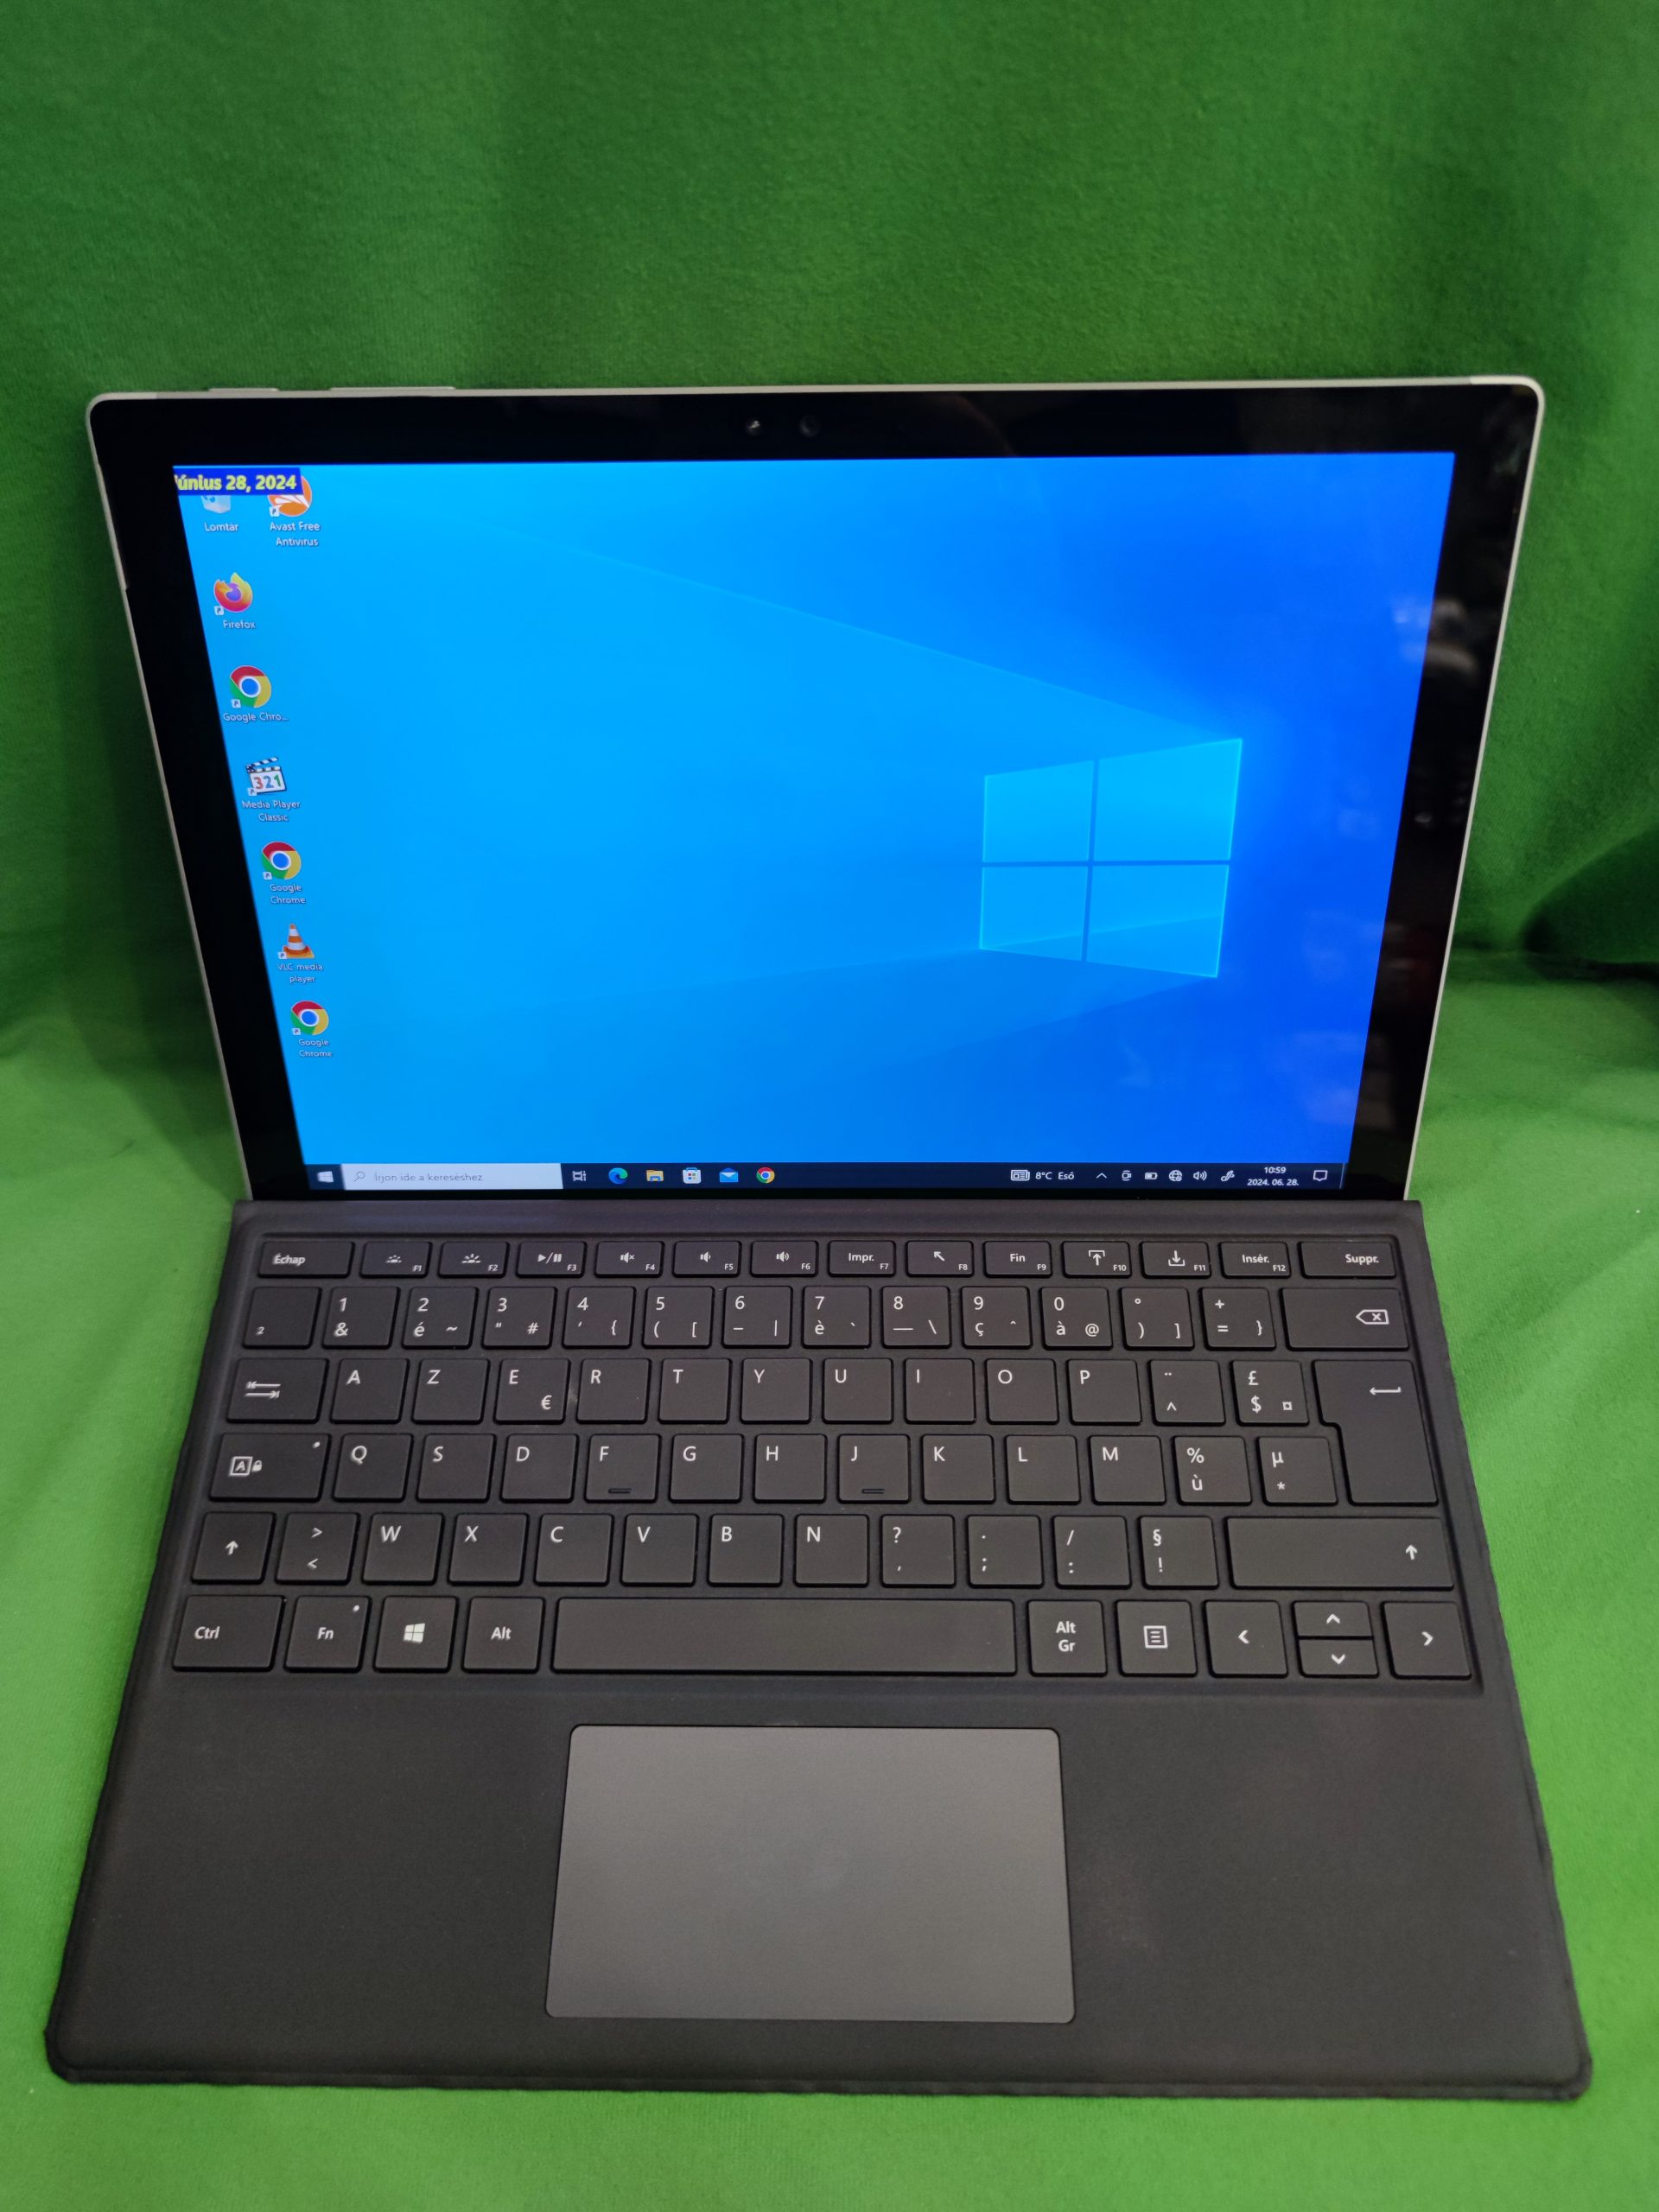 Microsoft Surface Pro 4 i5 8GB/256GB 2 in 1 tablet, kiemelt kép